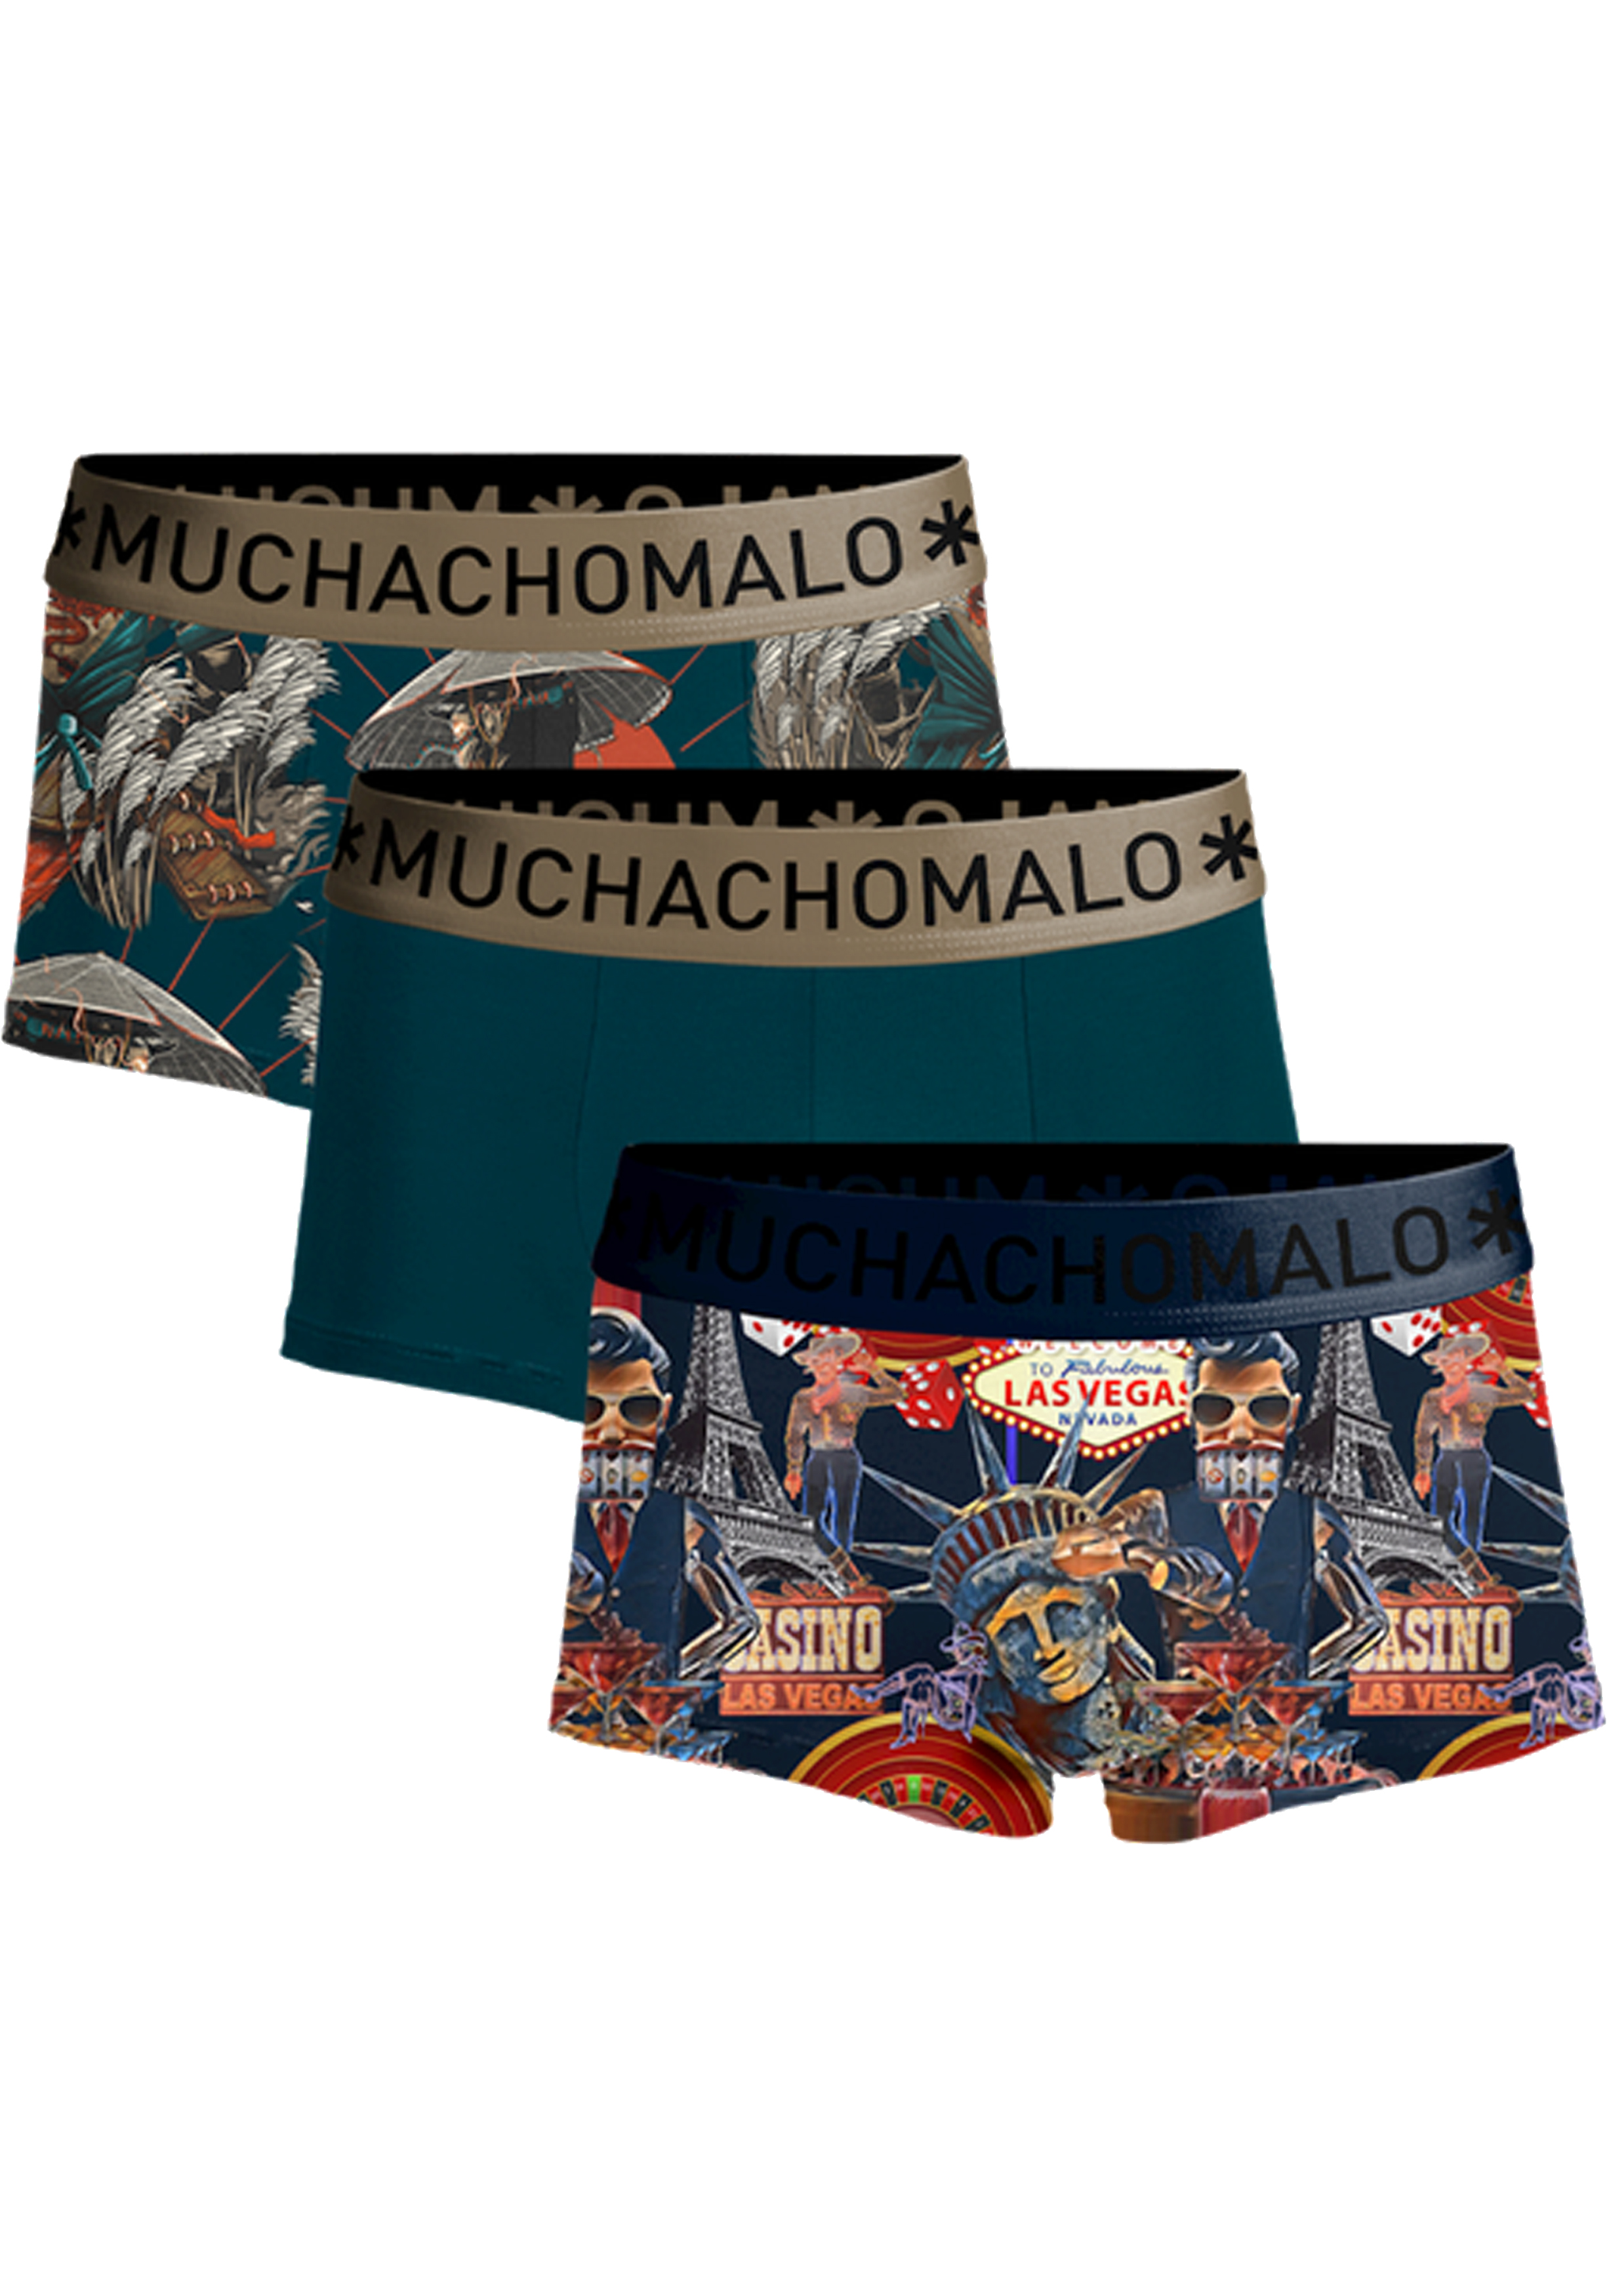 Muchachomalo boxershorts, heren boxers kort (3-pack), Las Vegas Japan